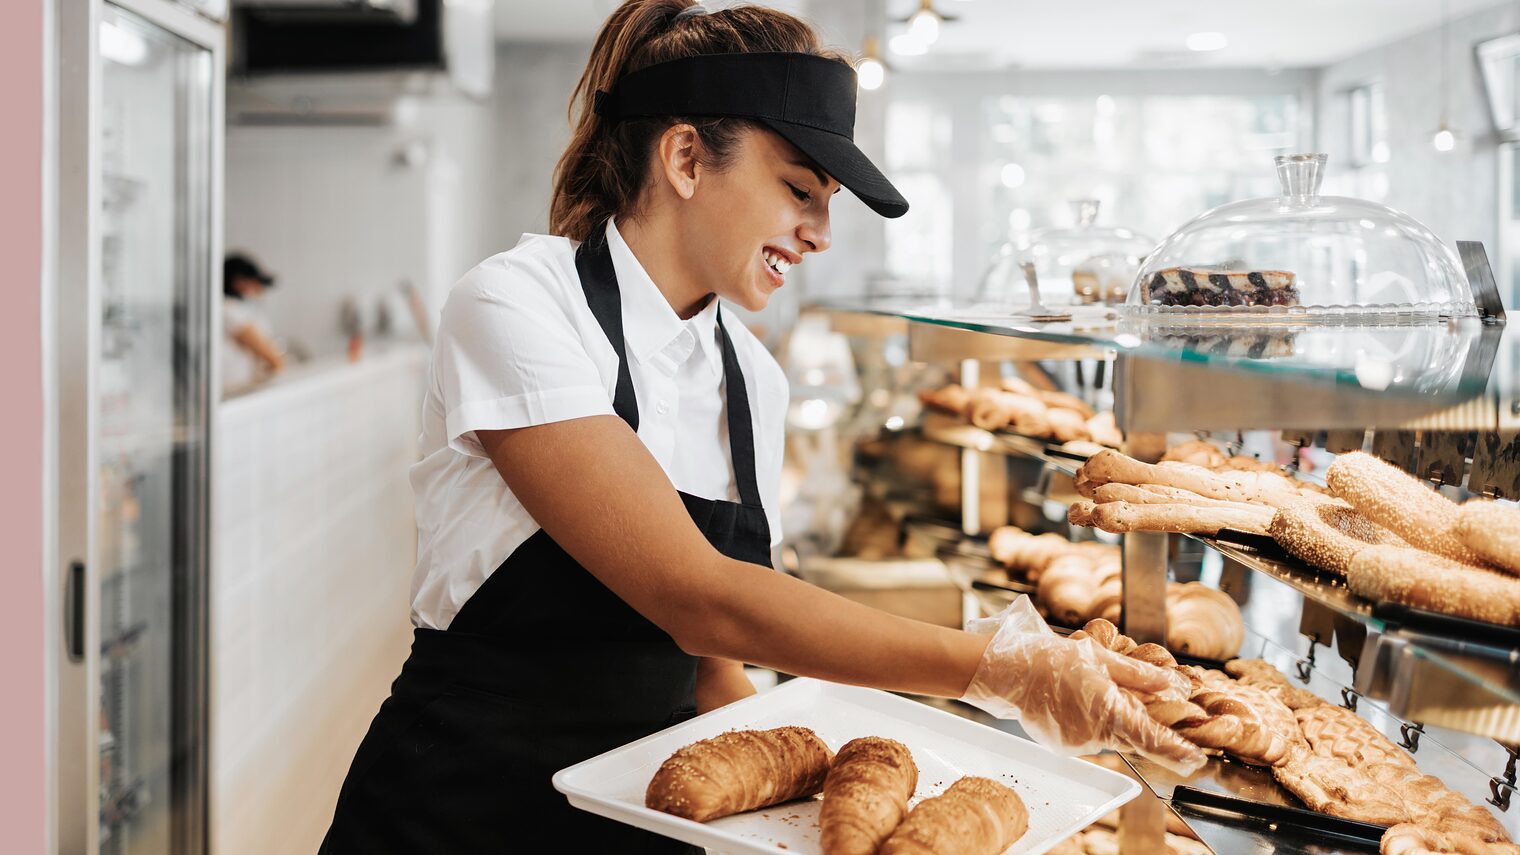 Symbolbild Bäckereifachverkäuferin räumt Ladentheke ein